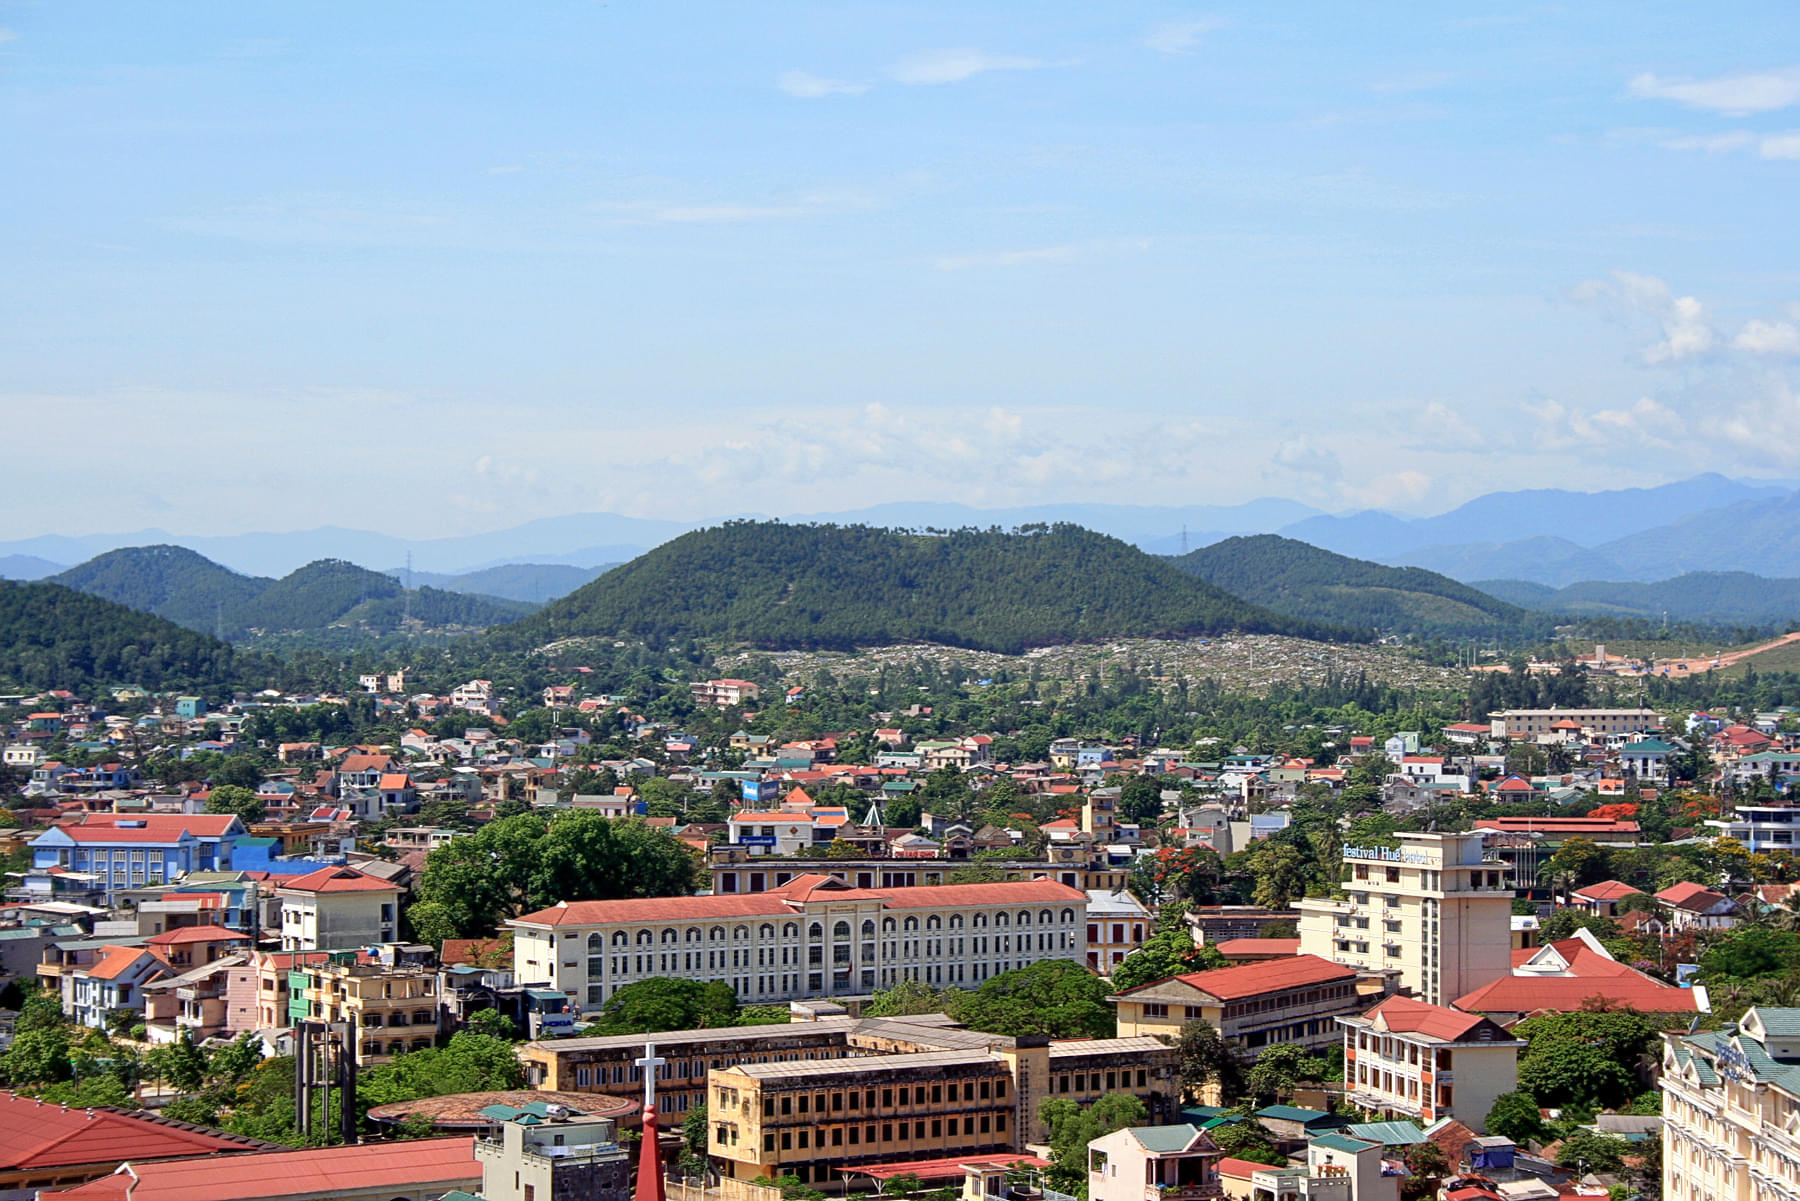 Mount Ngu Binh